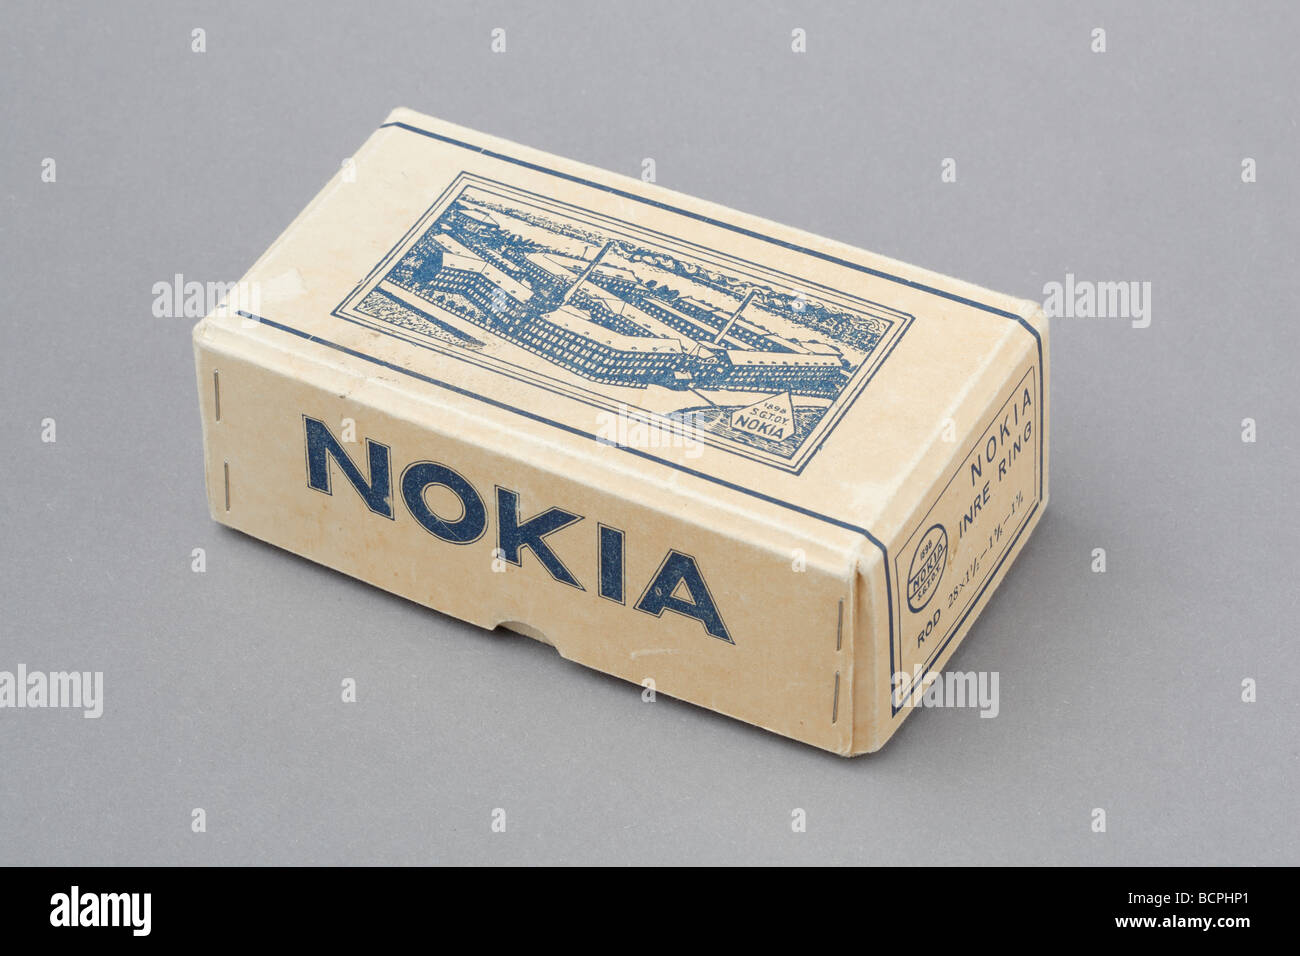 Caja de cartón vieja bicicleta, Nokia Tube.Antes de convertirse en una importante empresa de telecomunicaciones Nokia fabrica diferentes productos de goma Foto de stock